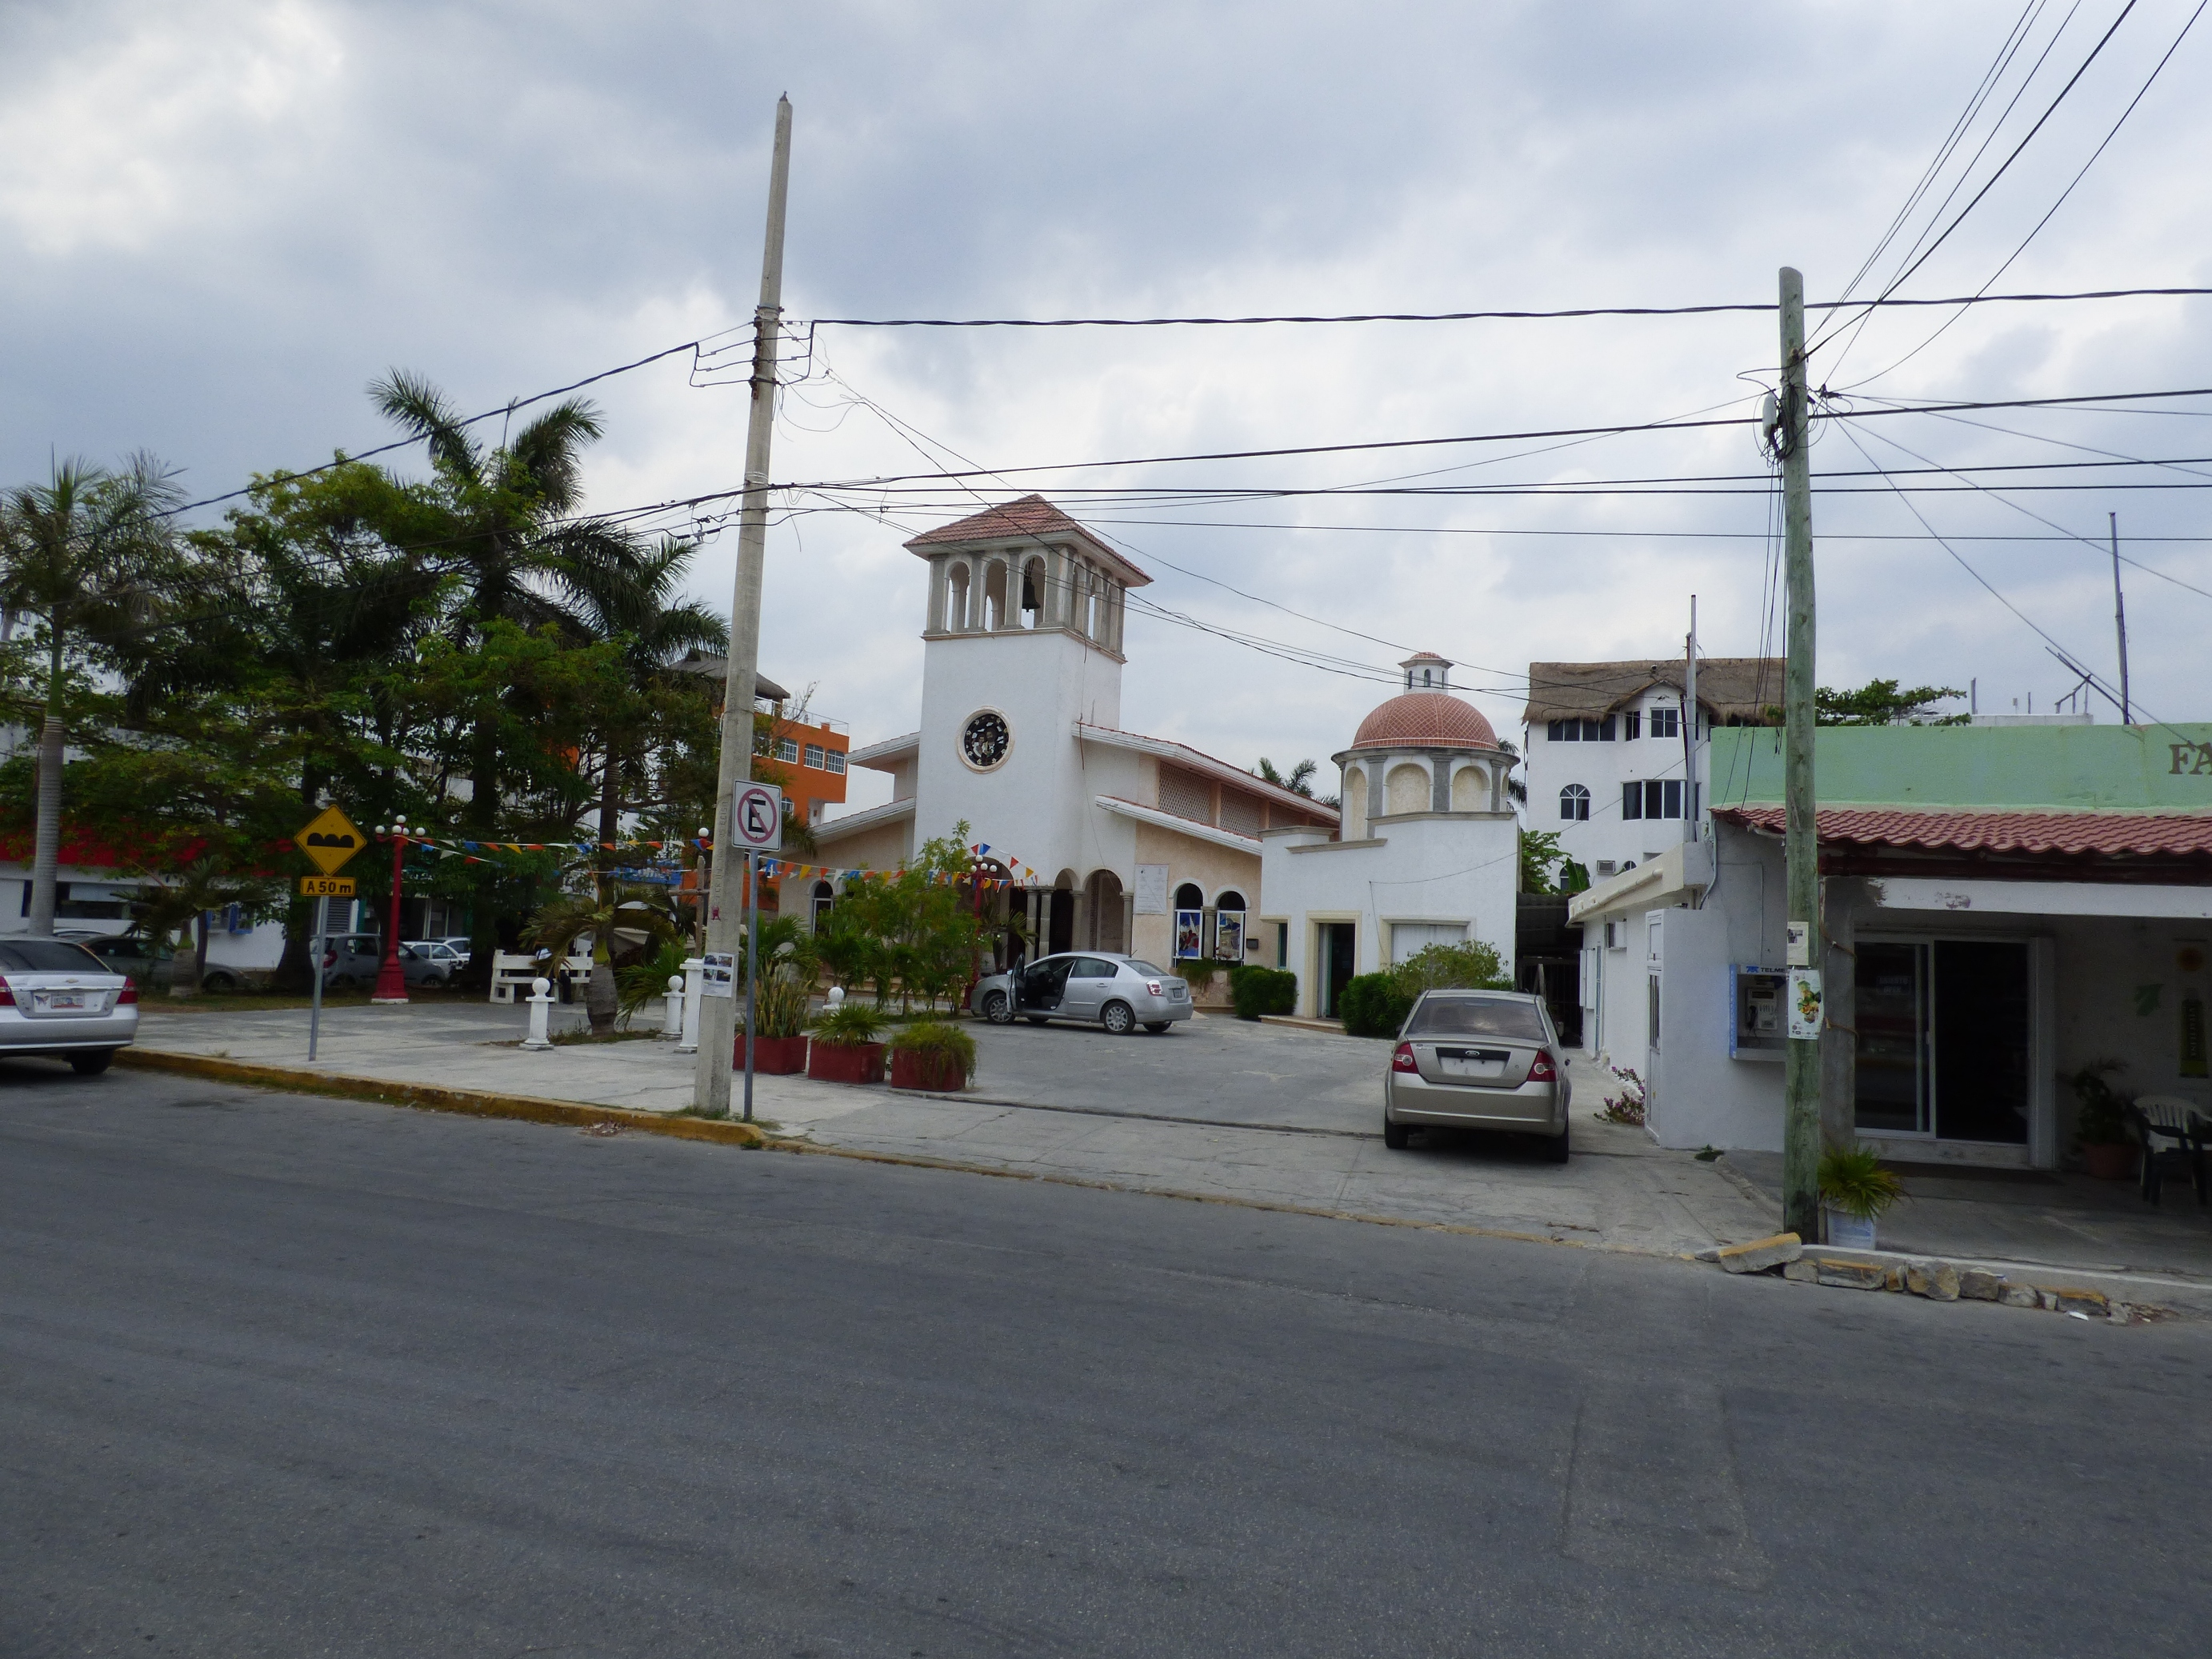 Puerto Morelos központja.